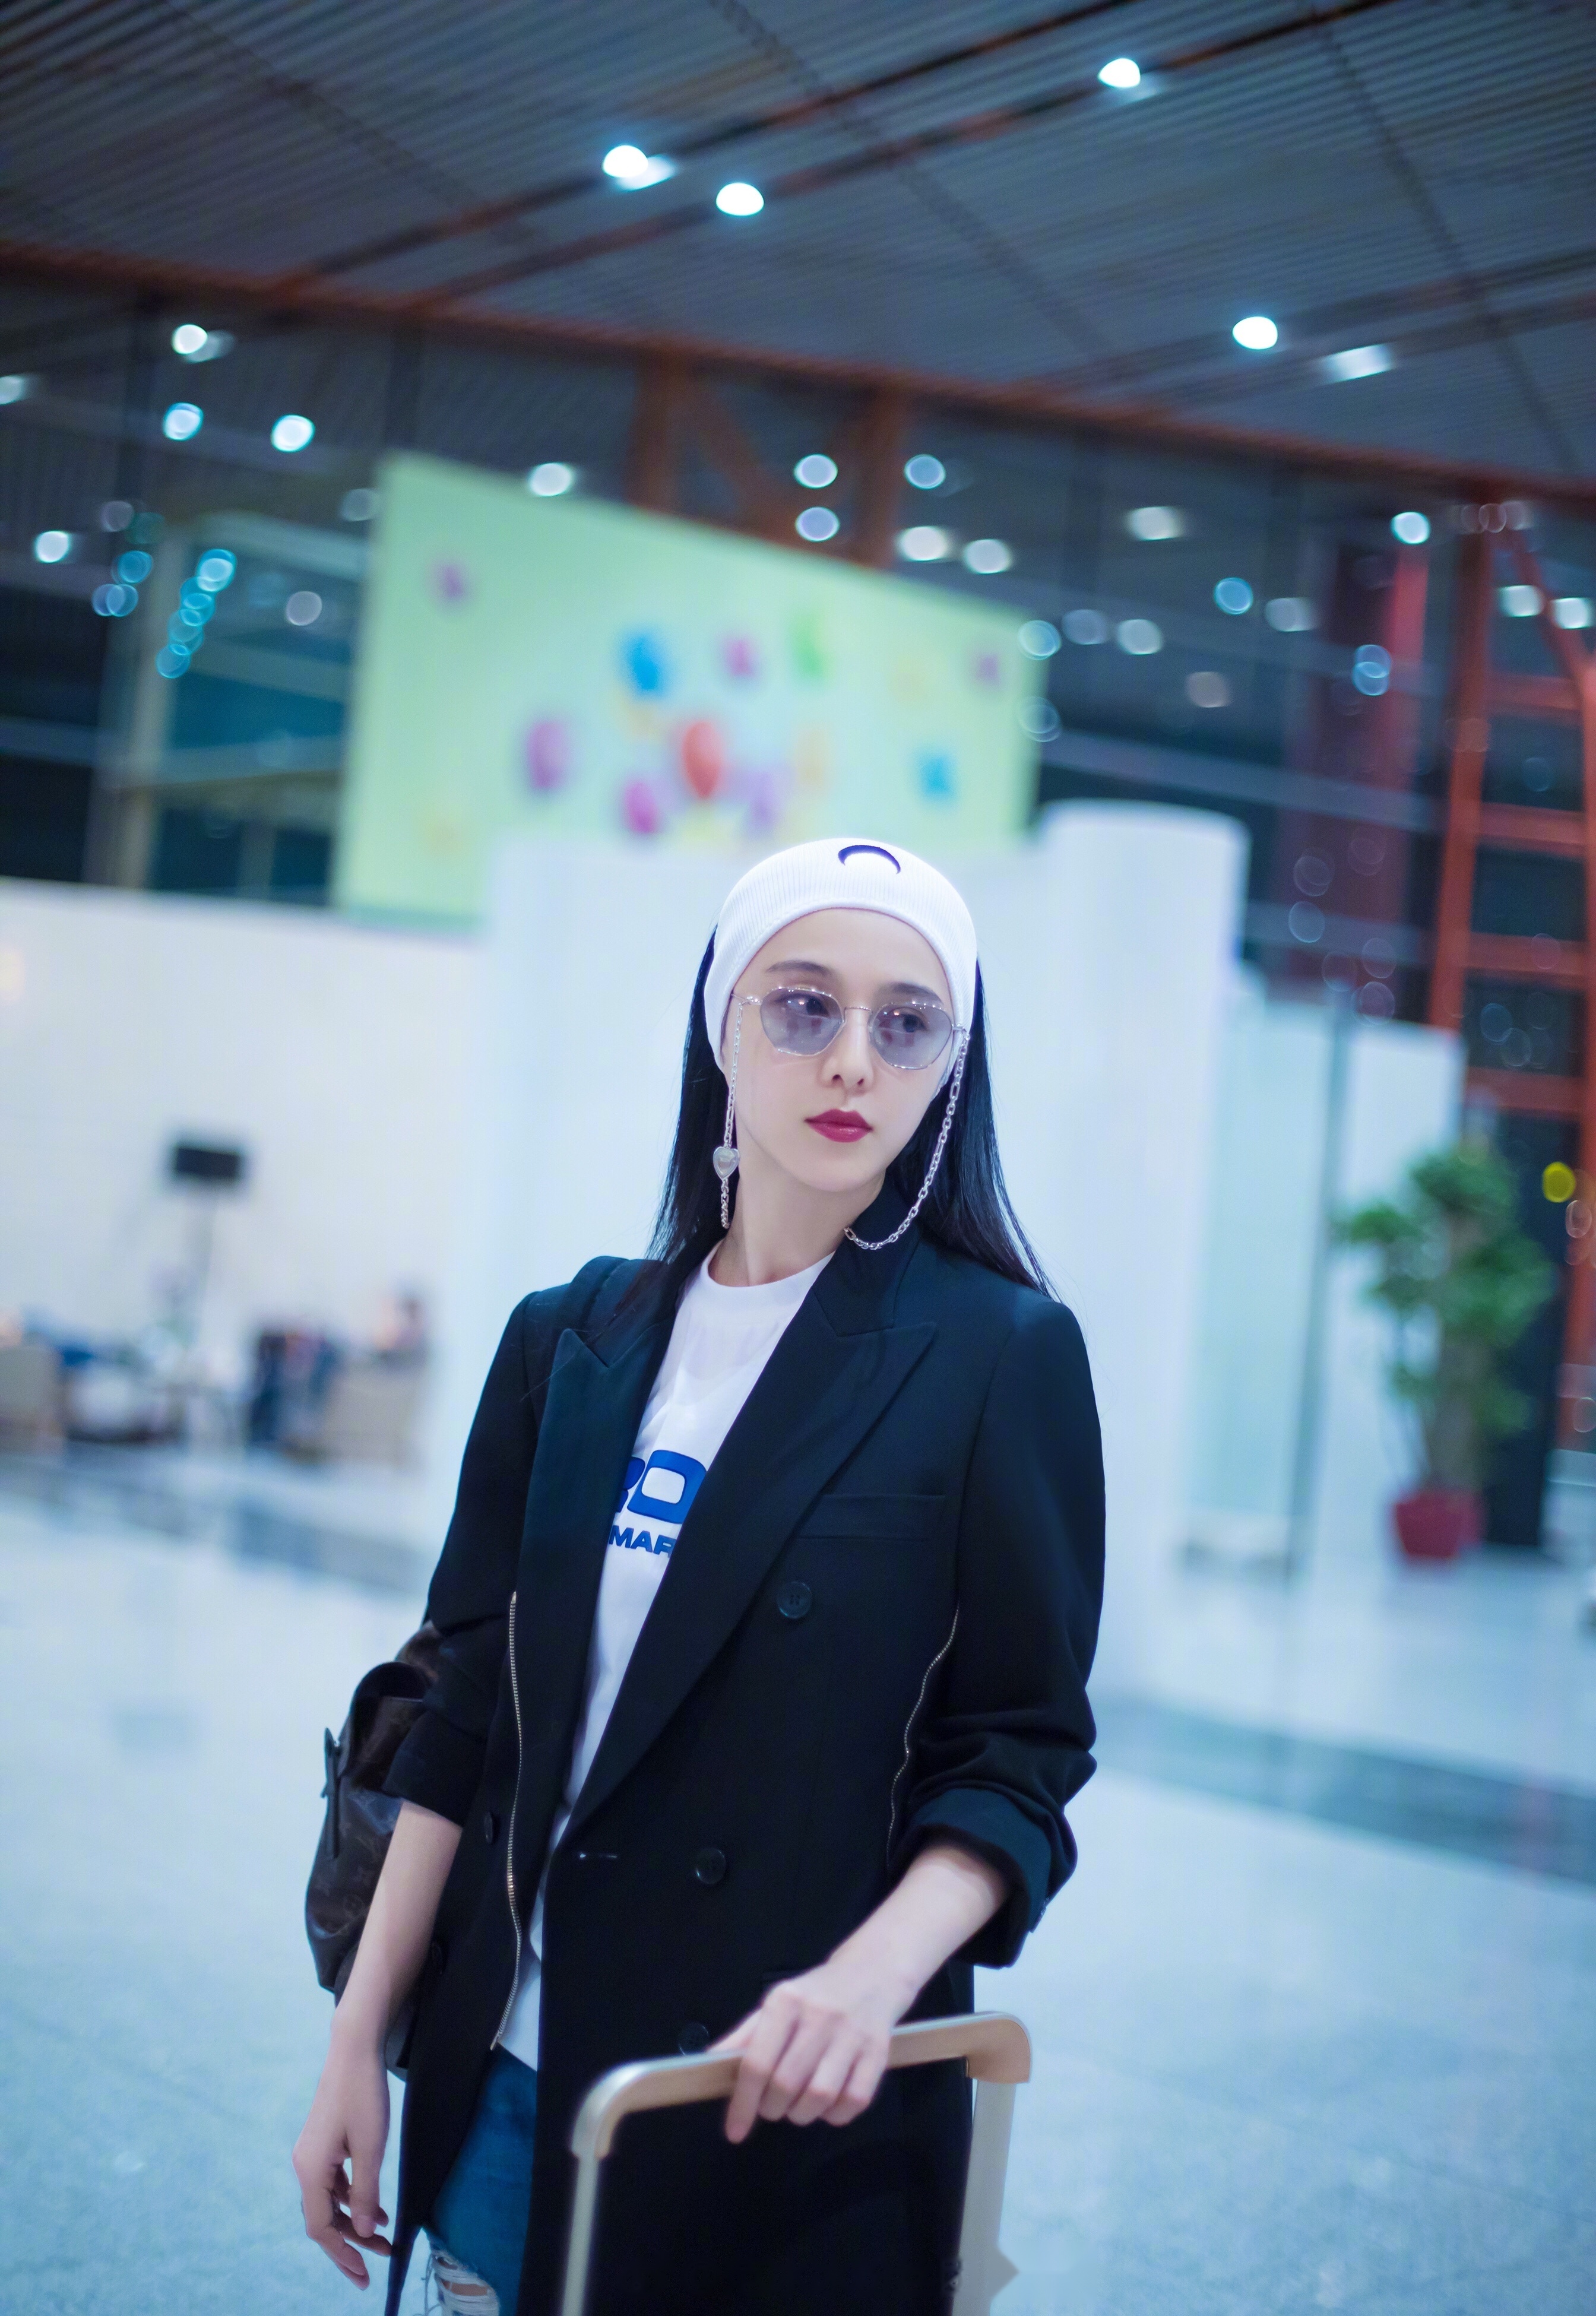 今日凌晨两点,中国女艺人范冰冰 抵达法国尼斯机场,身着一袭黑衣搭配